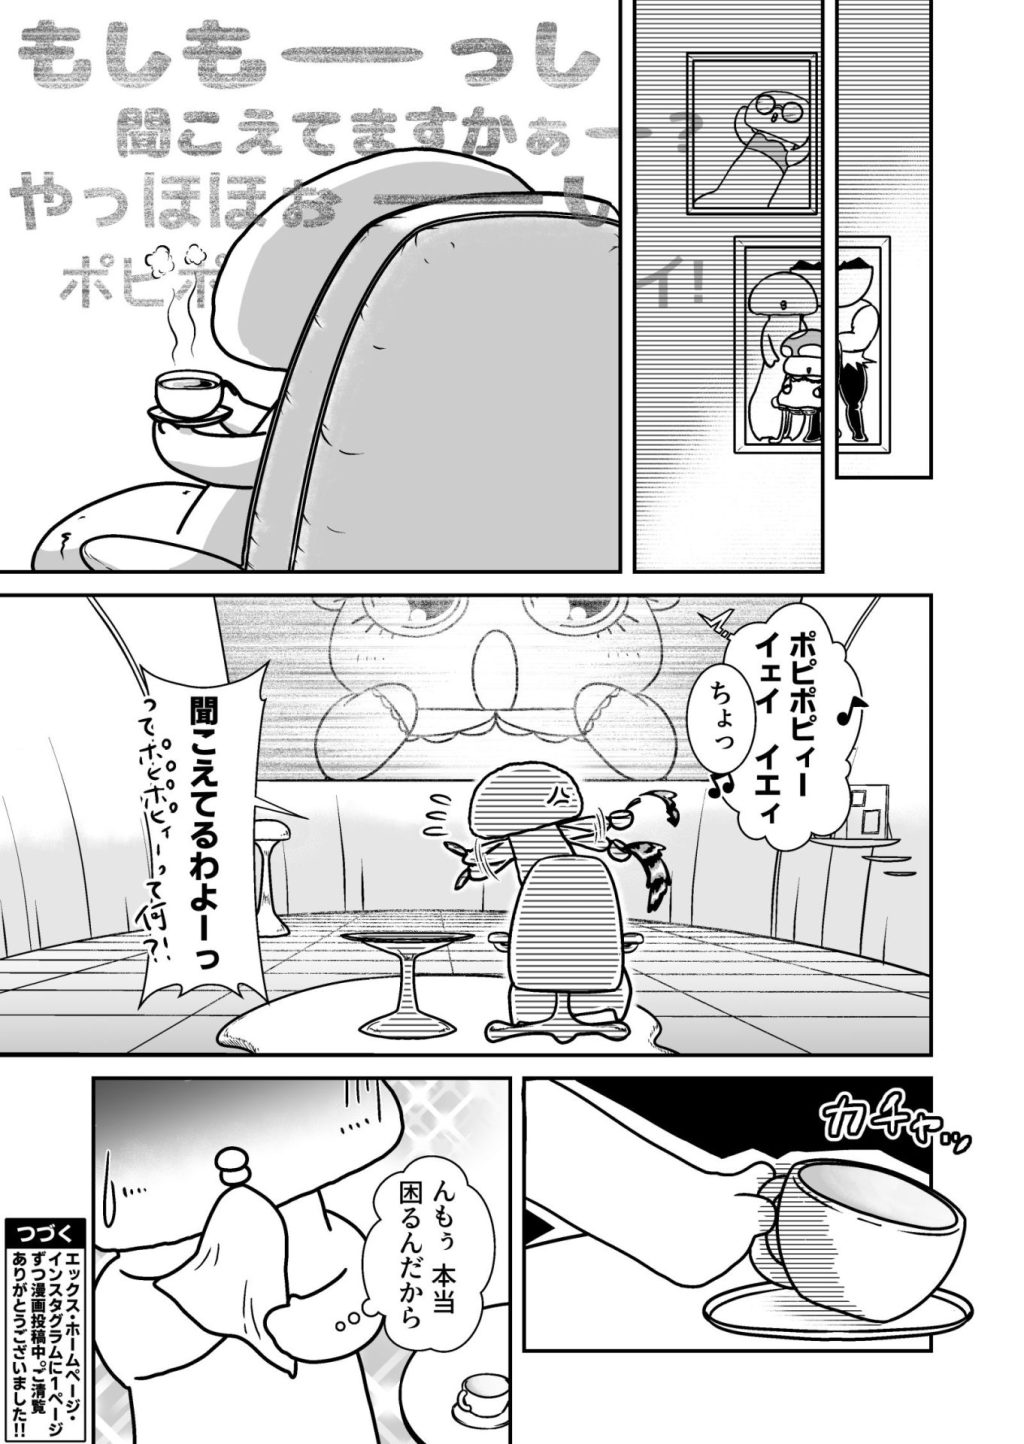 無料Web漫画、きのこぶ!!(仮)の21ページ目